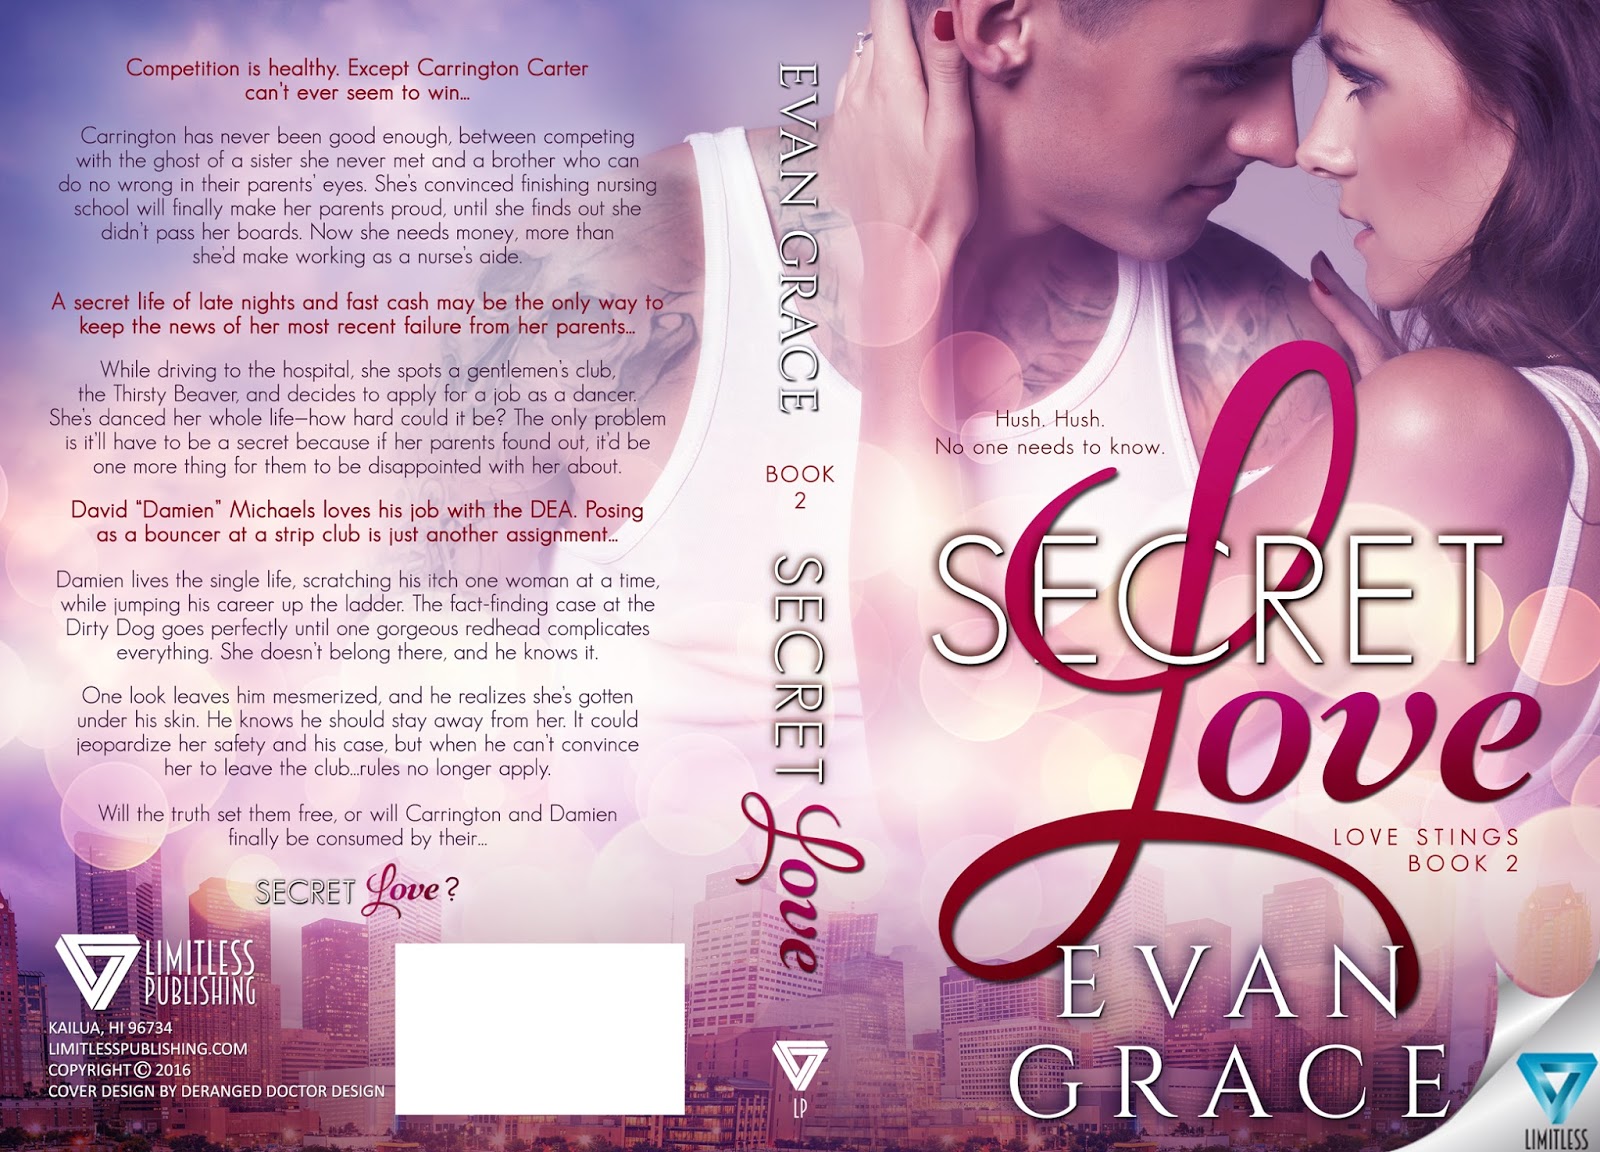 SECRET LOVE by Evan Grace RELEASE